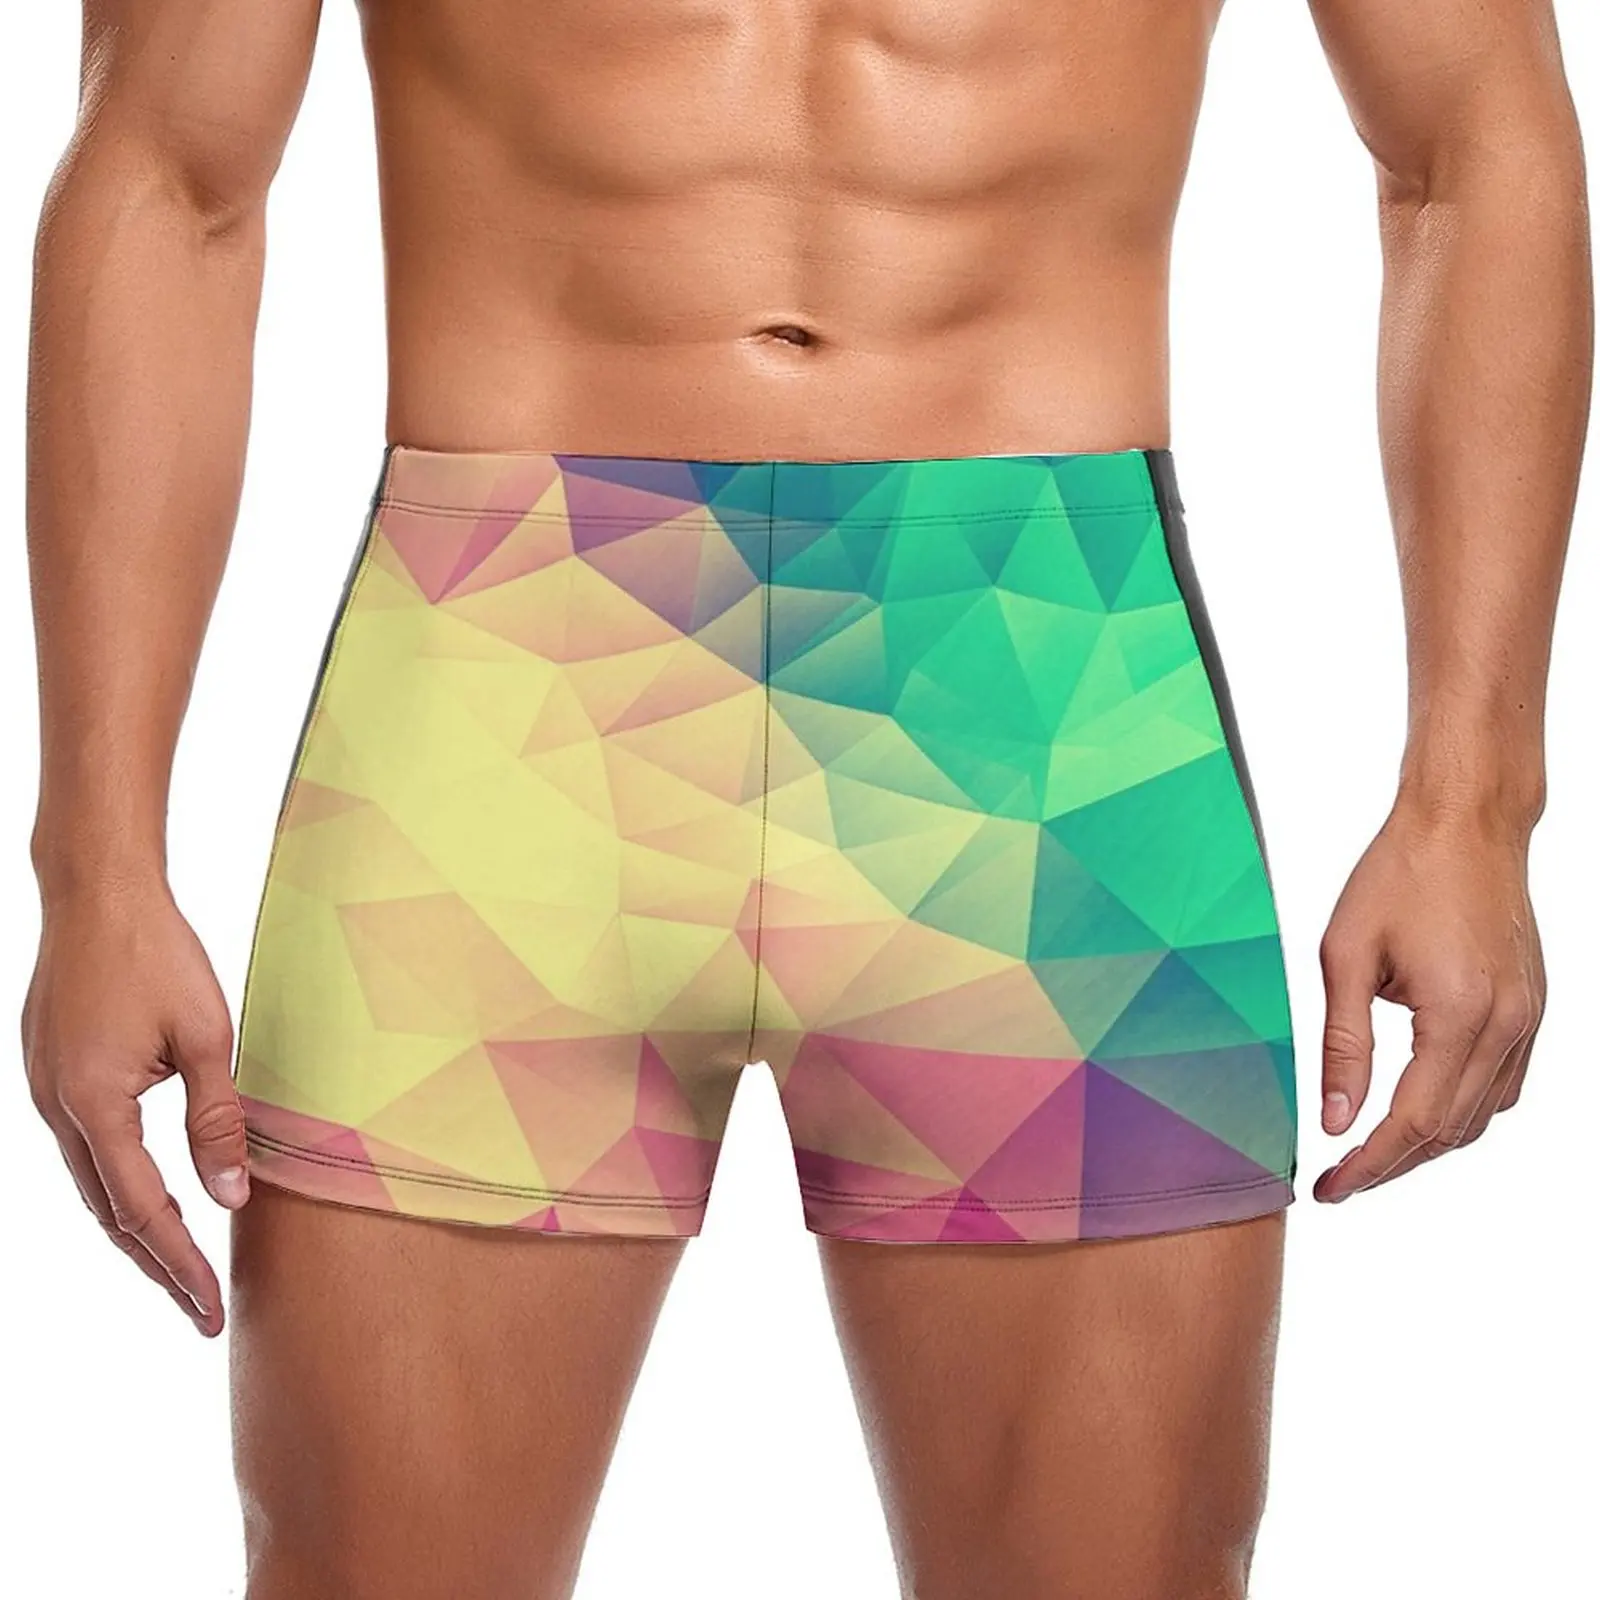 

Плавки с абстрактным геометрическим принтом, многоцветные треугольные прочные трендовые боксеры для плавания, мужские купальники для бассейна